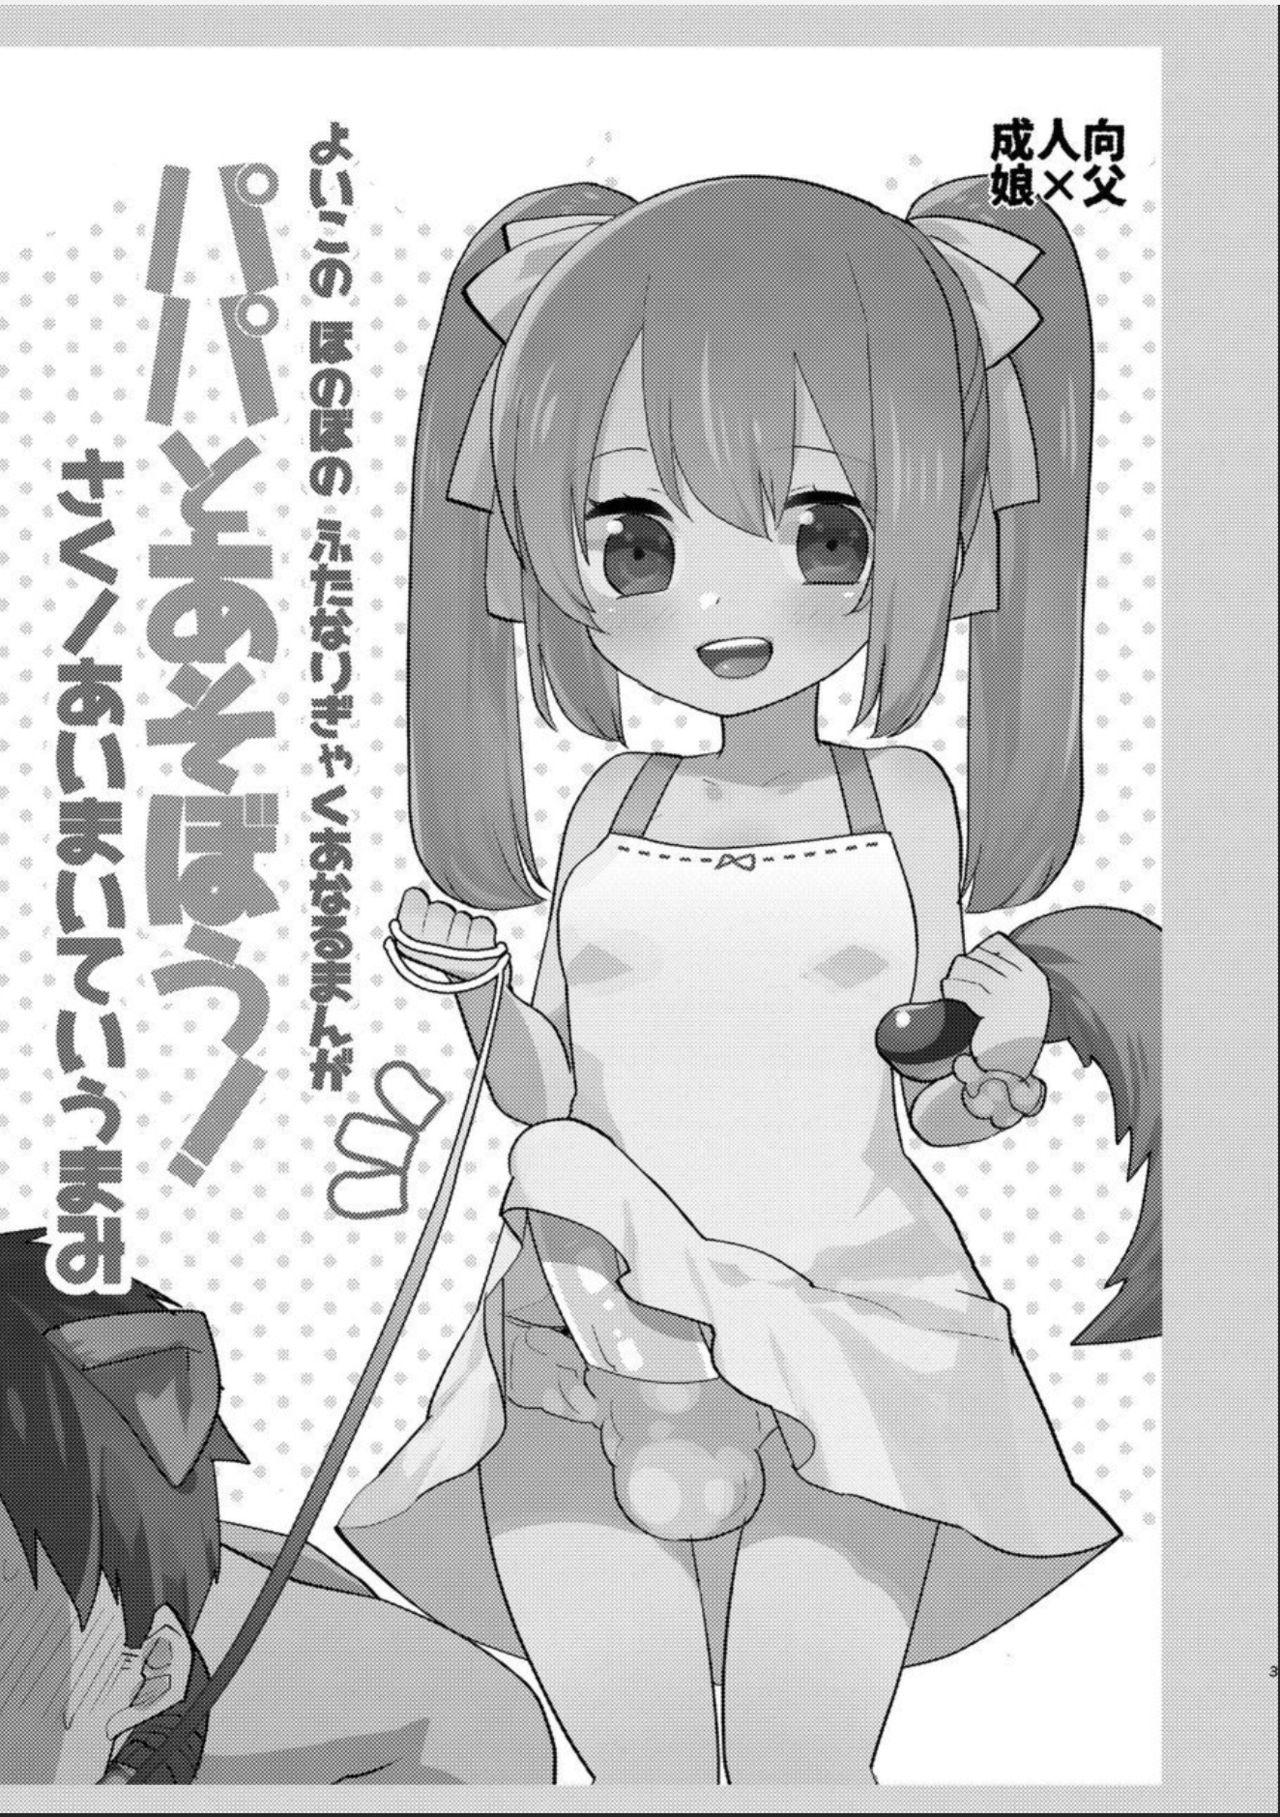 Yoiko no Futanari Gyaku Anal Manga "Papa to Asobou!" | Futanari Anal Manga for Good Children: "Play with Daddy!" 2